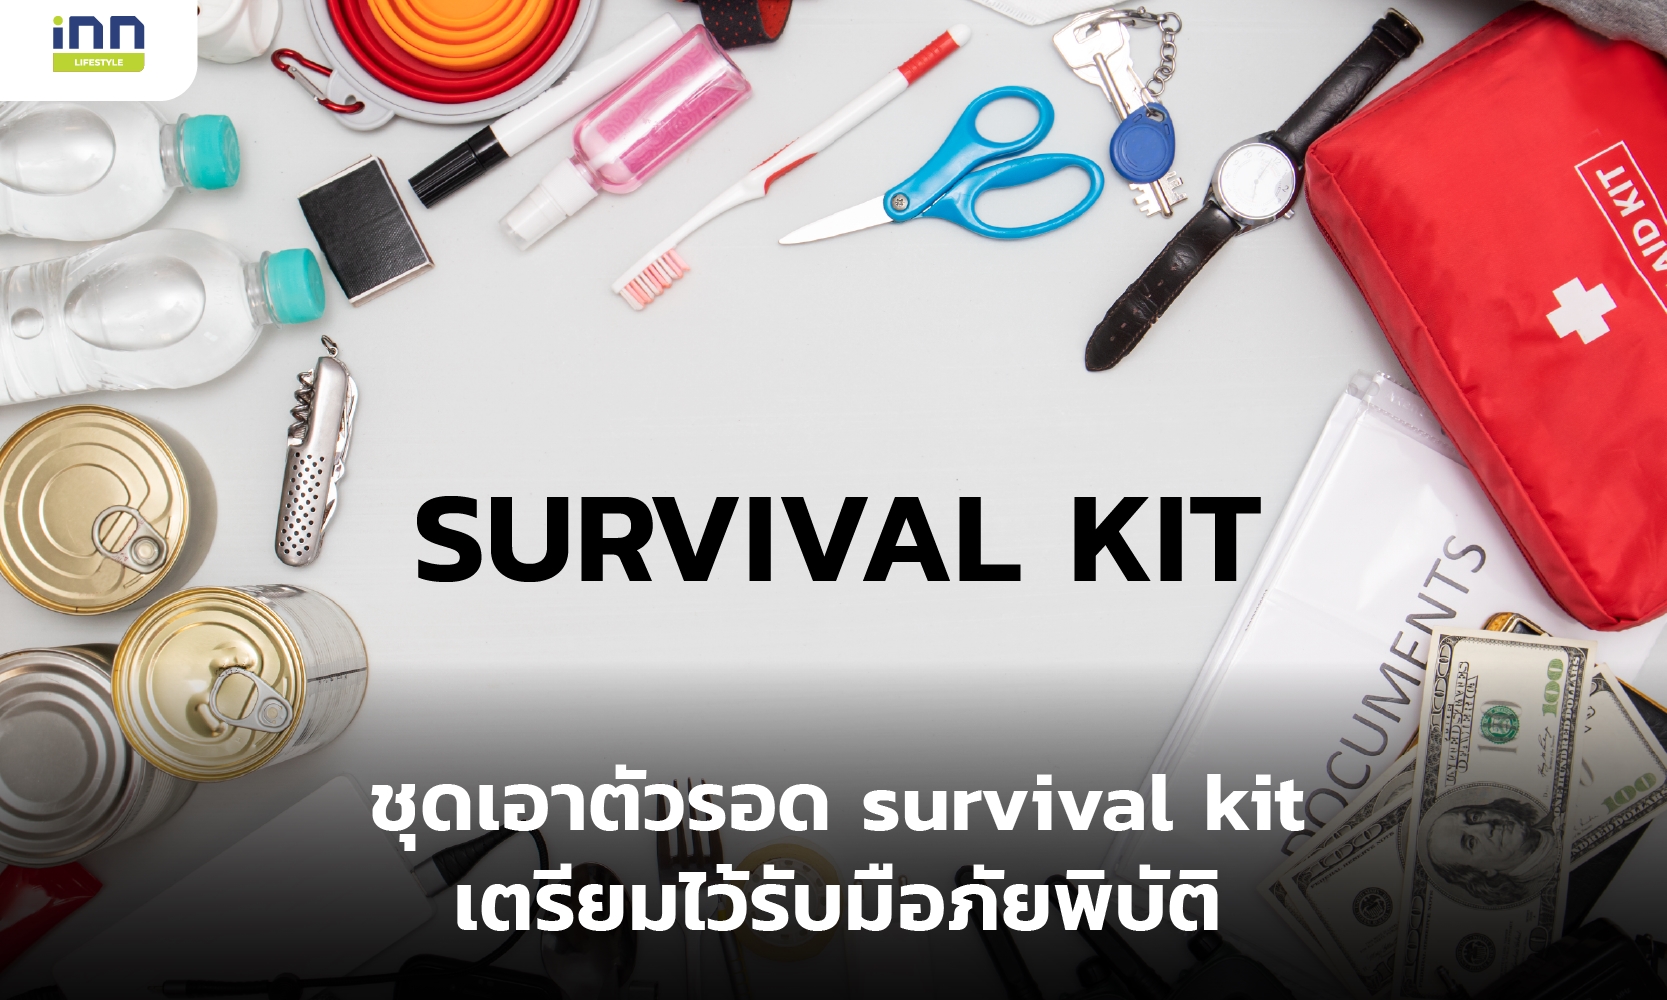 ชุดเอาตัวรอด survival kit เตรียมไว้รับมือภัยพิบัติ